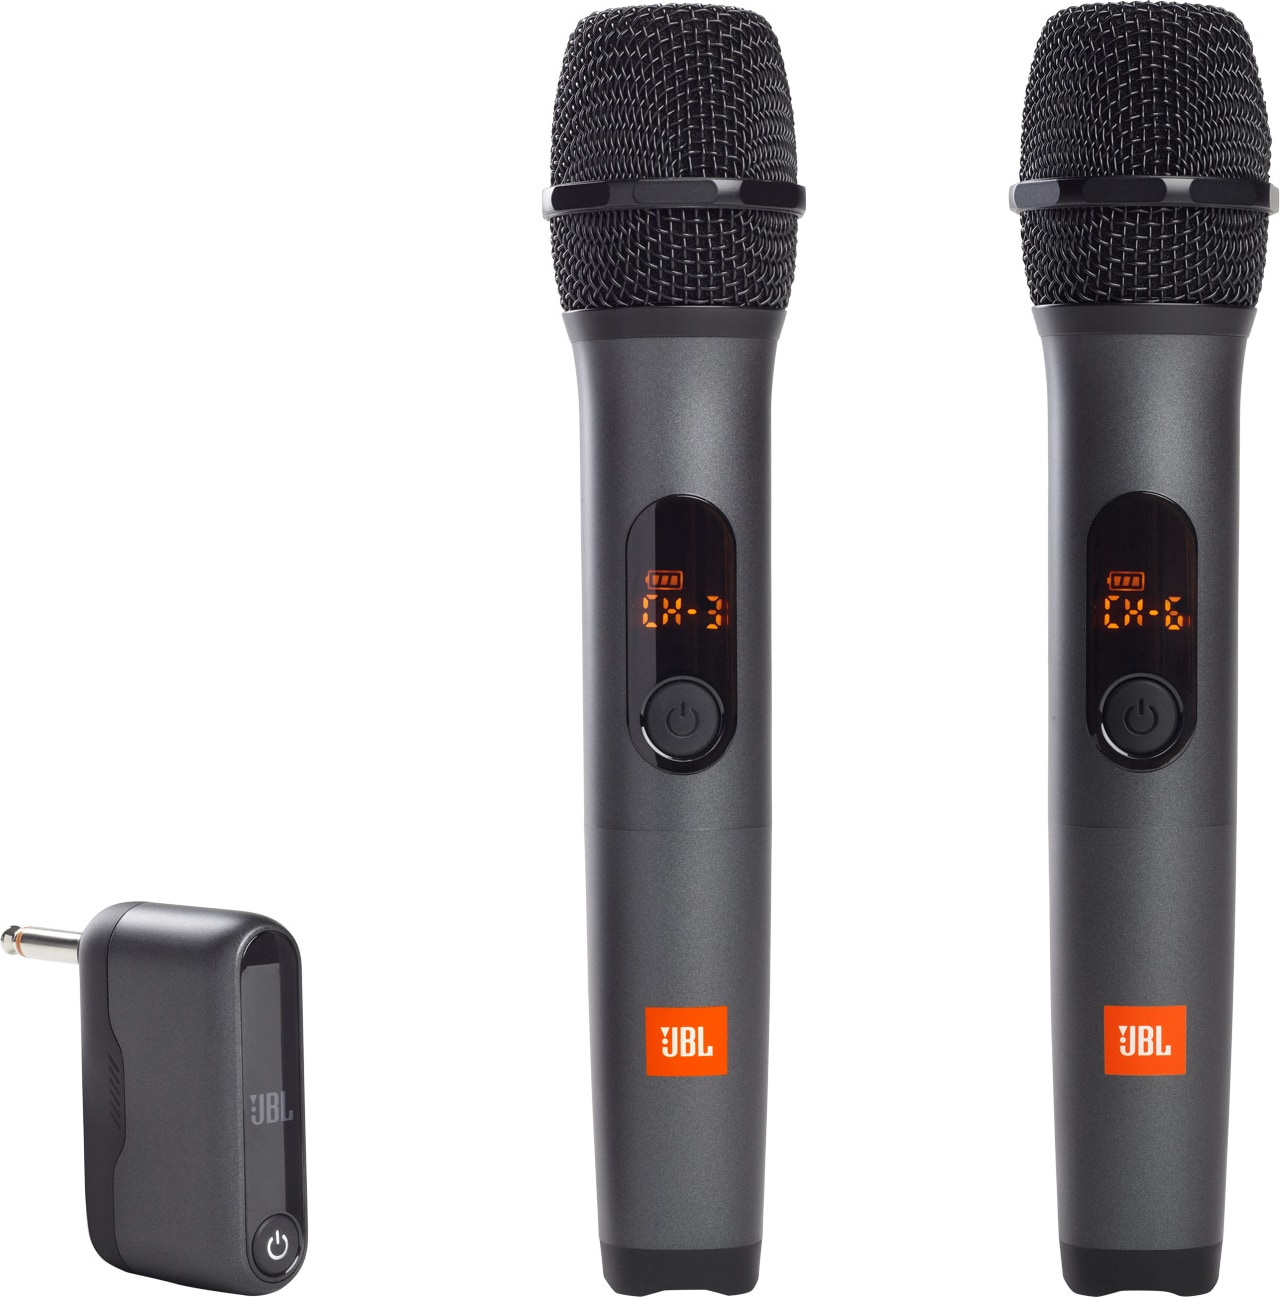 JBL langaton mikrofoni (2 kpl) - Gigantti verkkokauppa